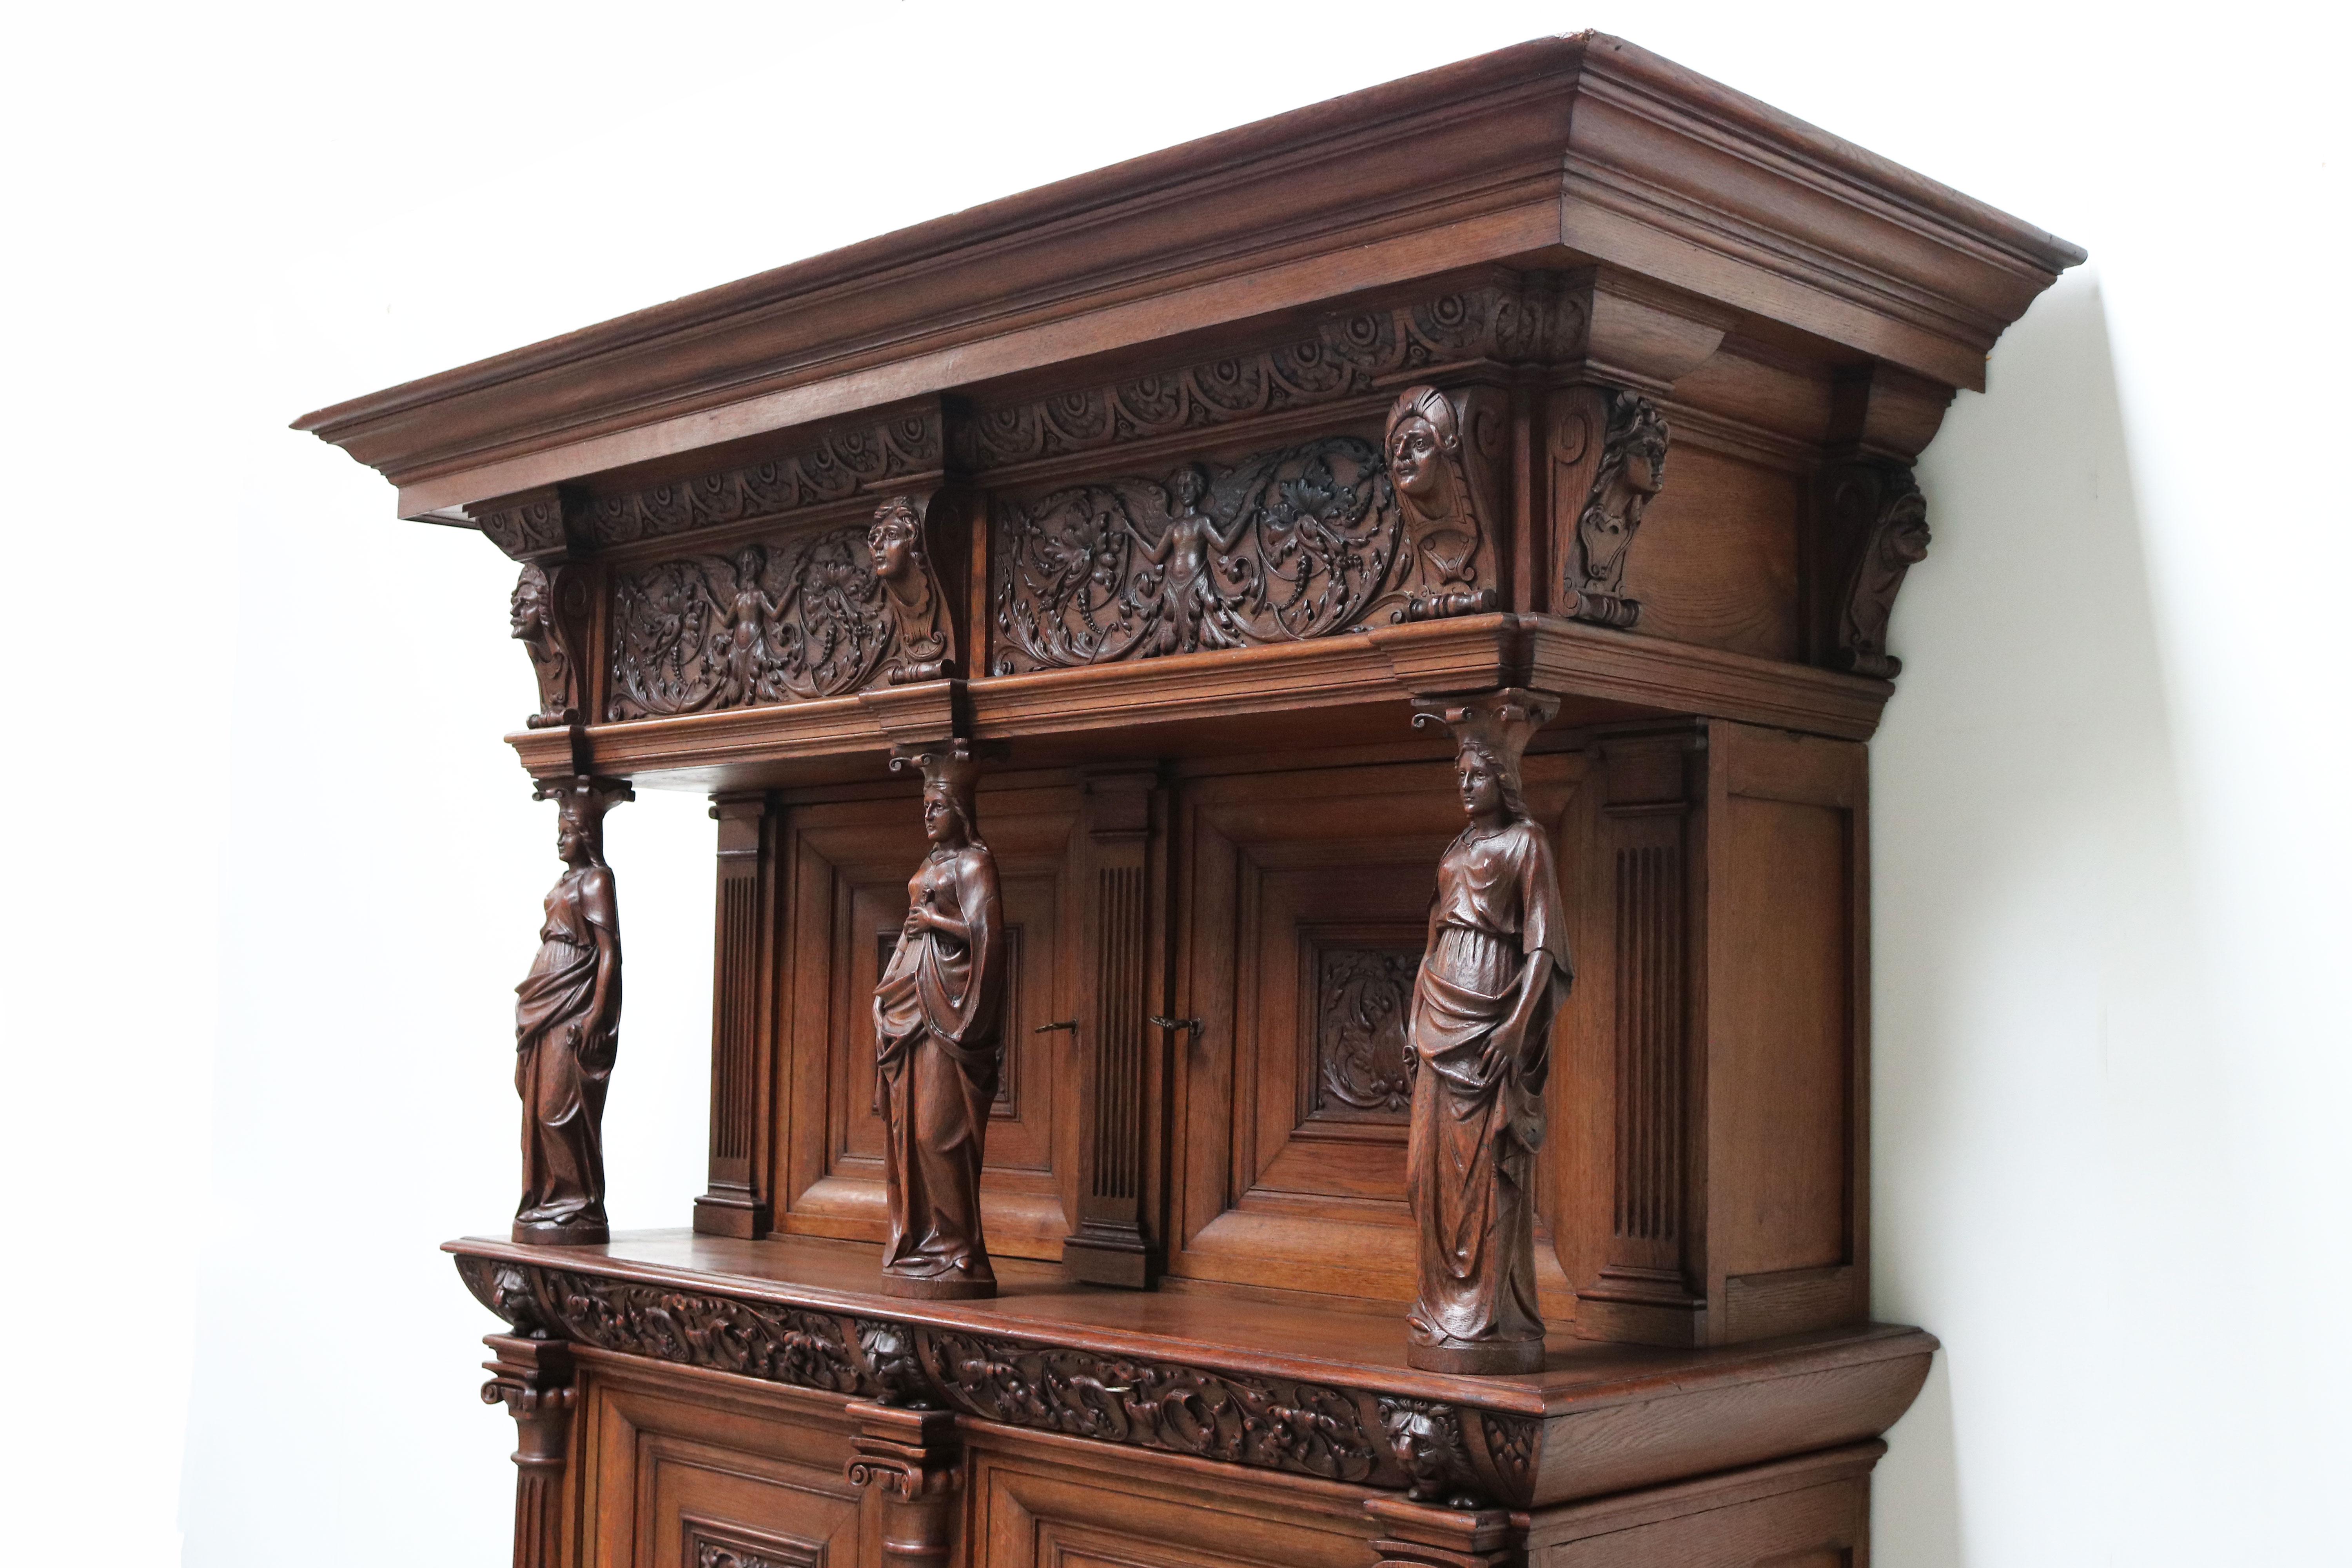 Impressive Dutch Renaissance Revival 19th Century Cabinet Carved Angels & Lions For Sale 4